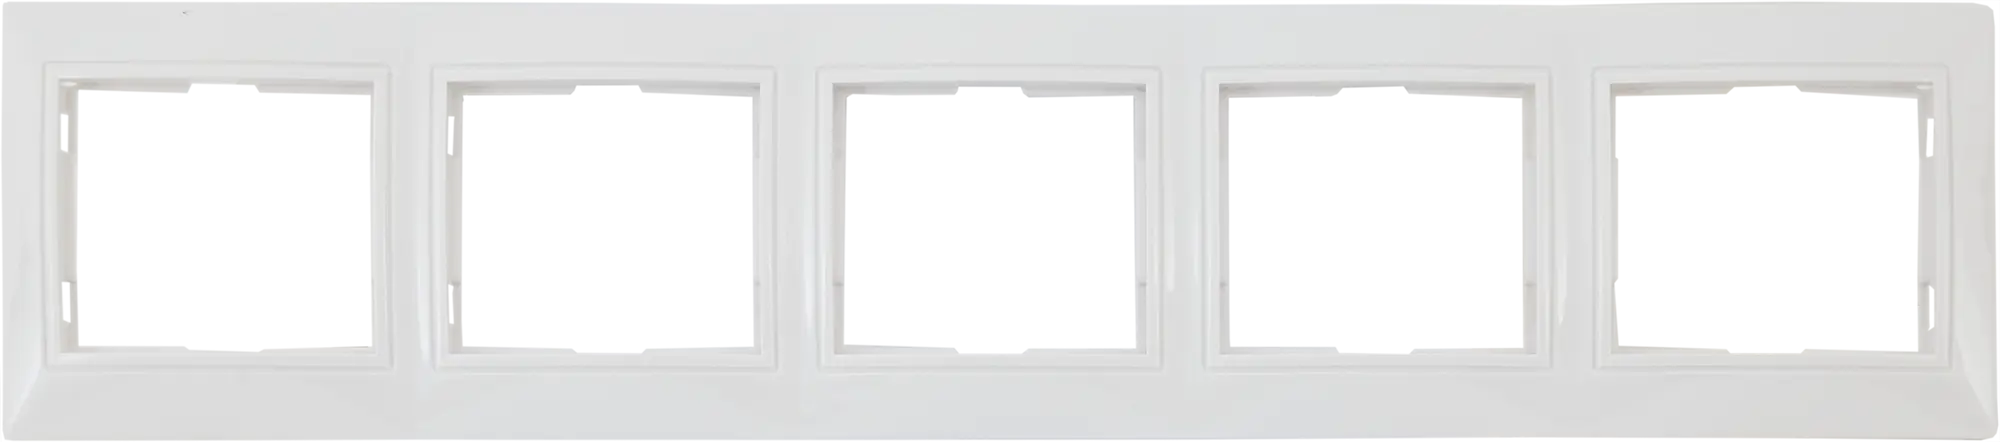 Рамка для розеток и выключателей горизонтальная Таймыр 5 постов, цвет белый четырехпостовая горизонтальная рамка tdm